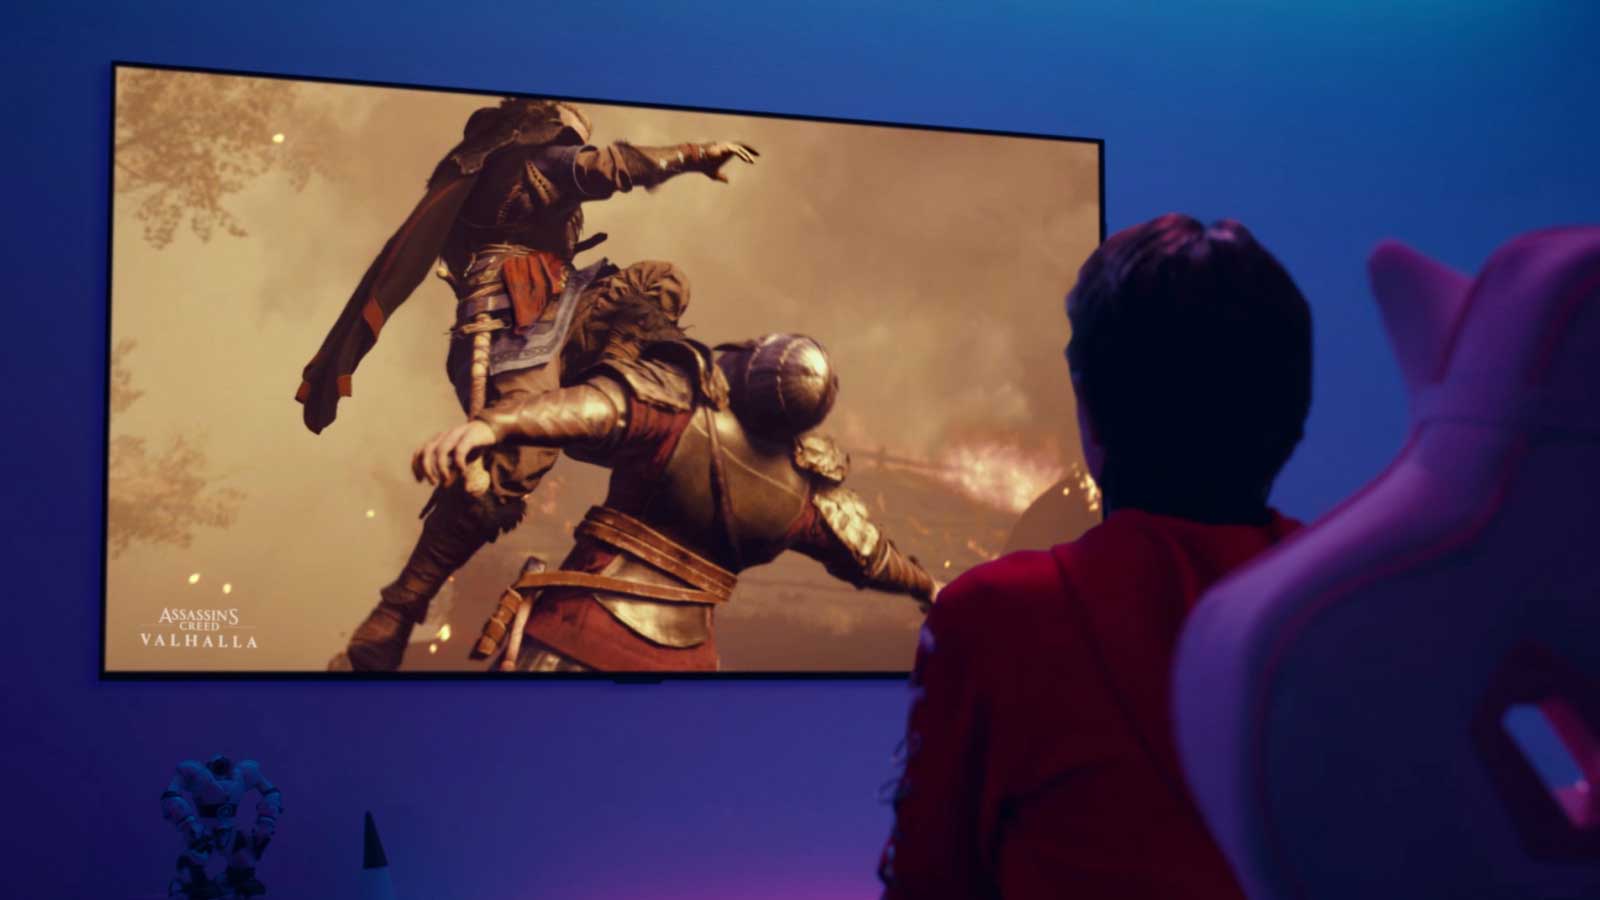 Un vídeo de lo más destacado del juego Assassin's Creed Valhalla se muestra en una pantalla de televisor